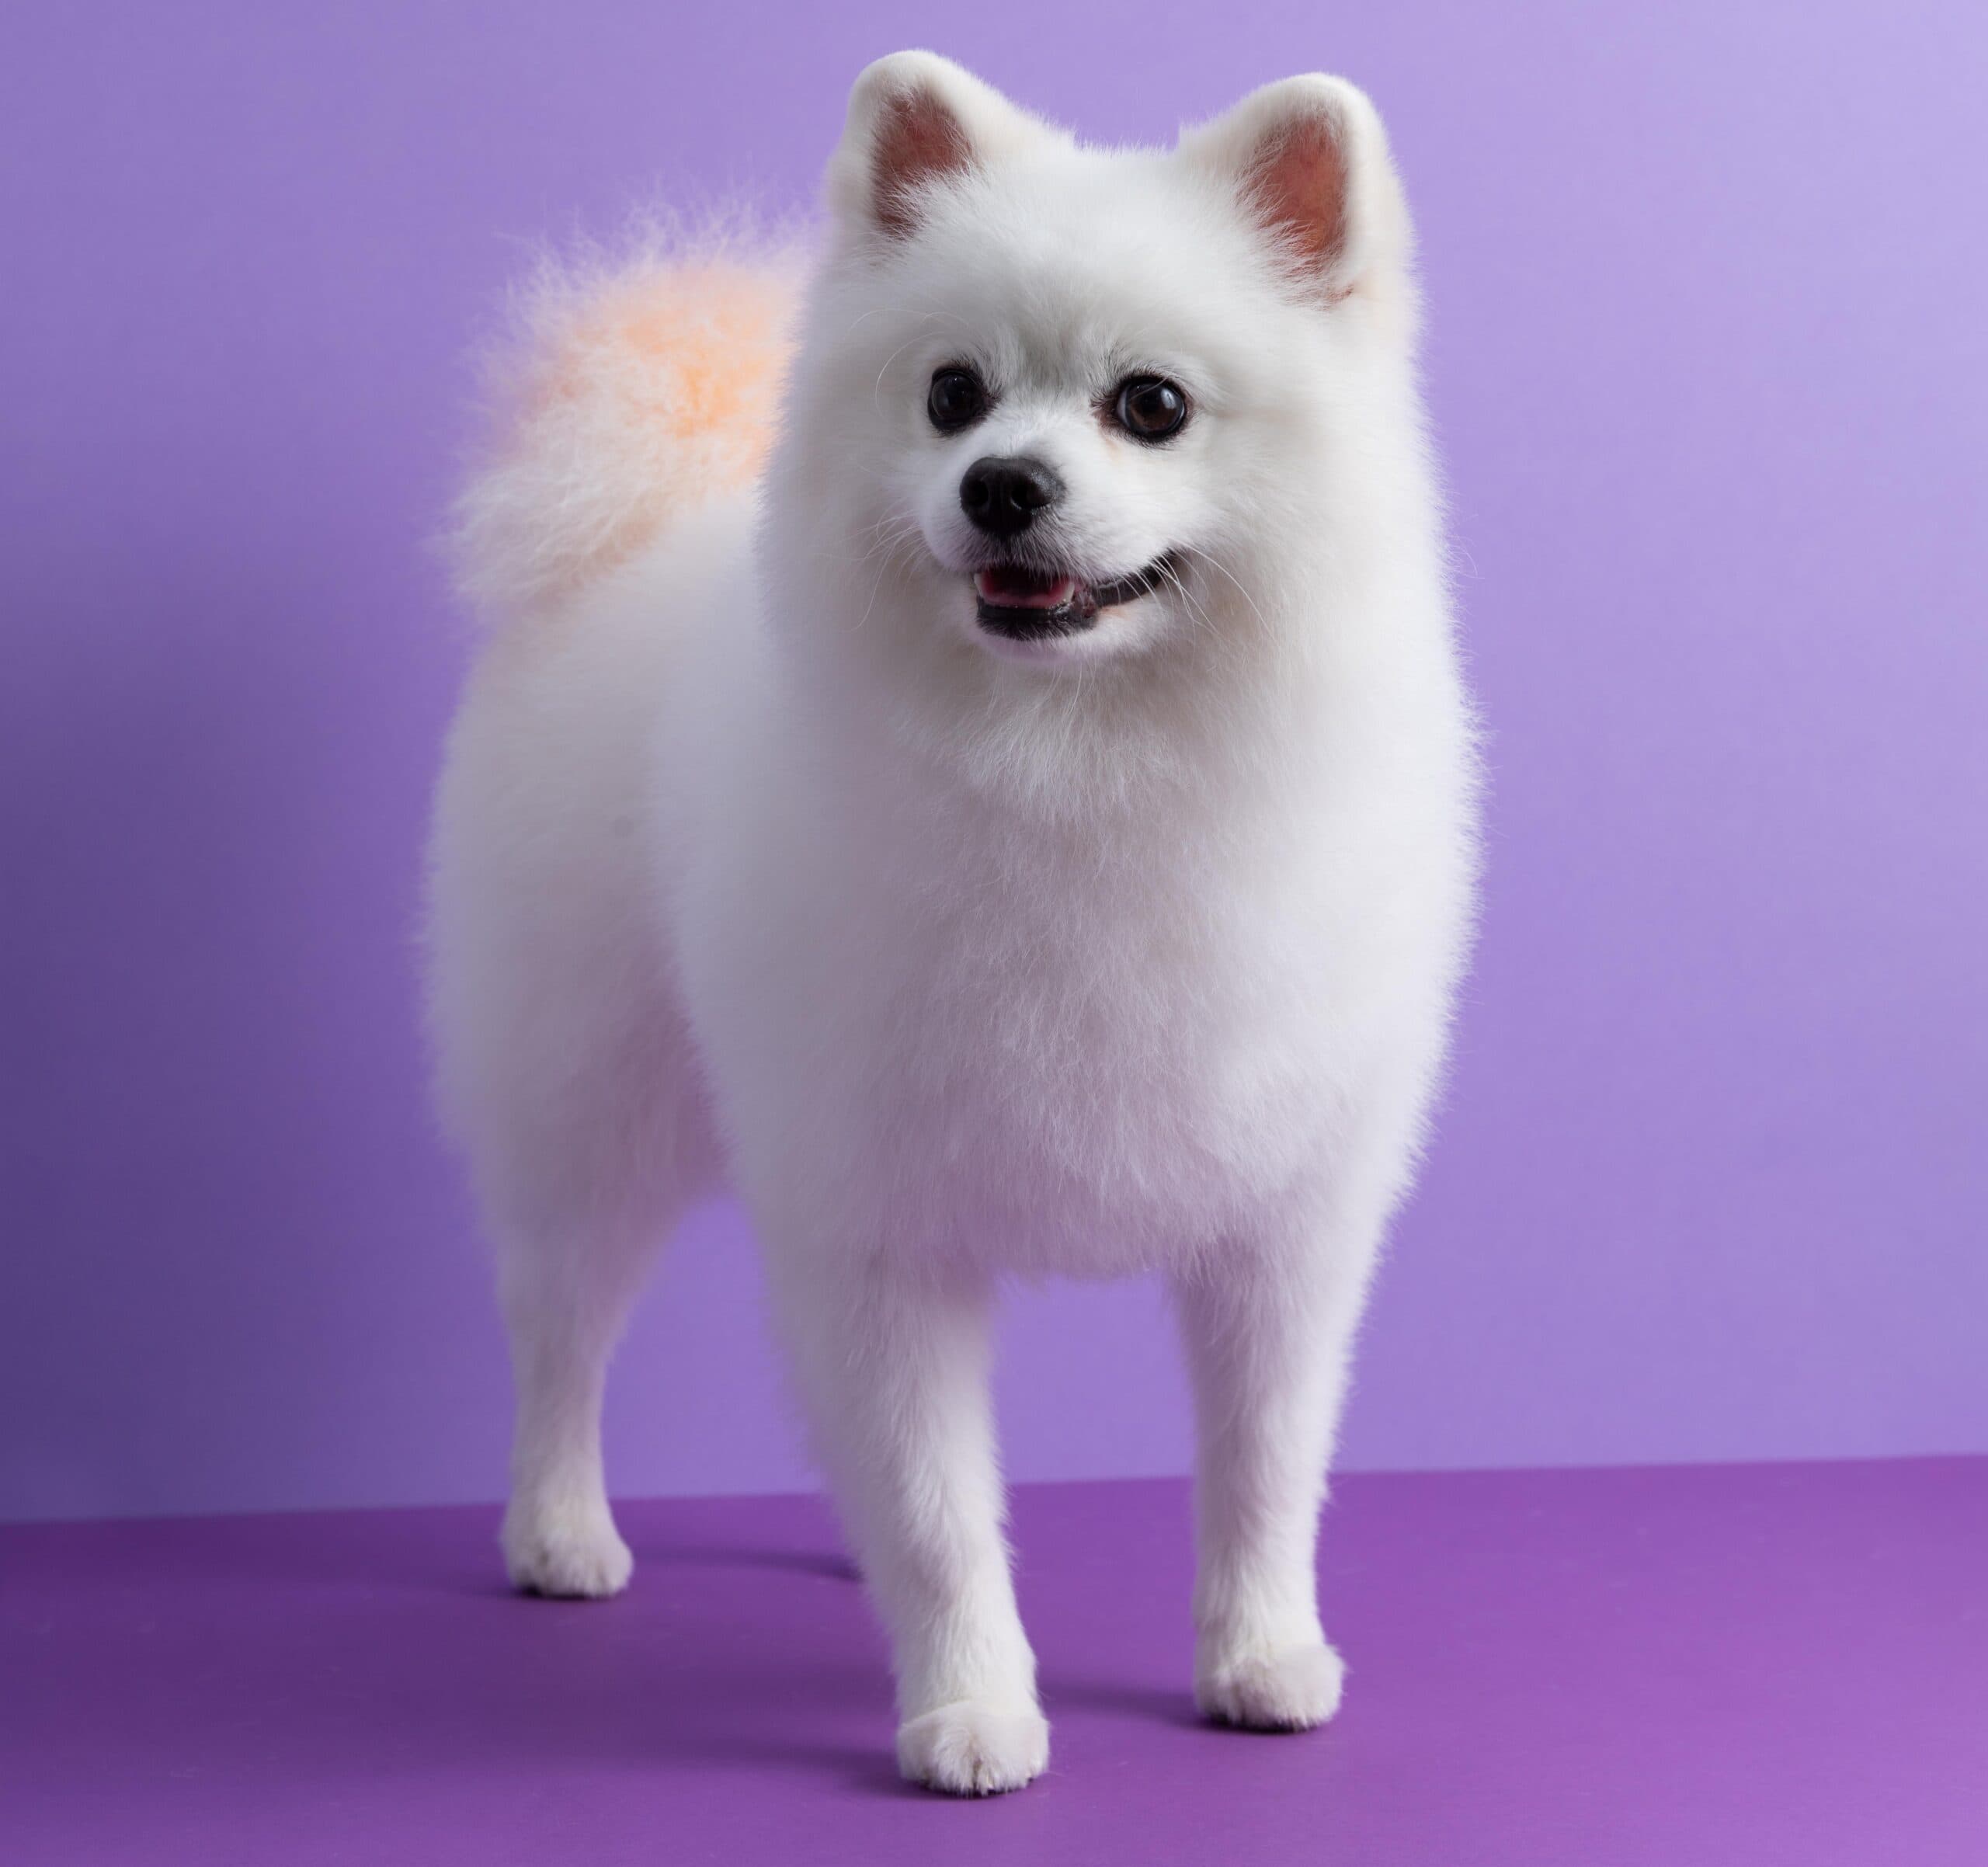 White Pomeranian dog sitting among purple background